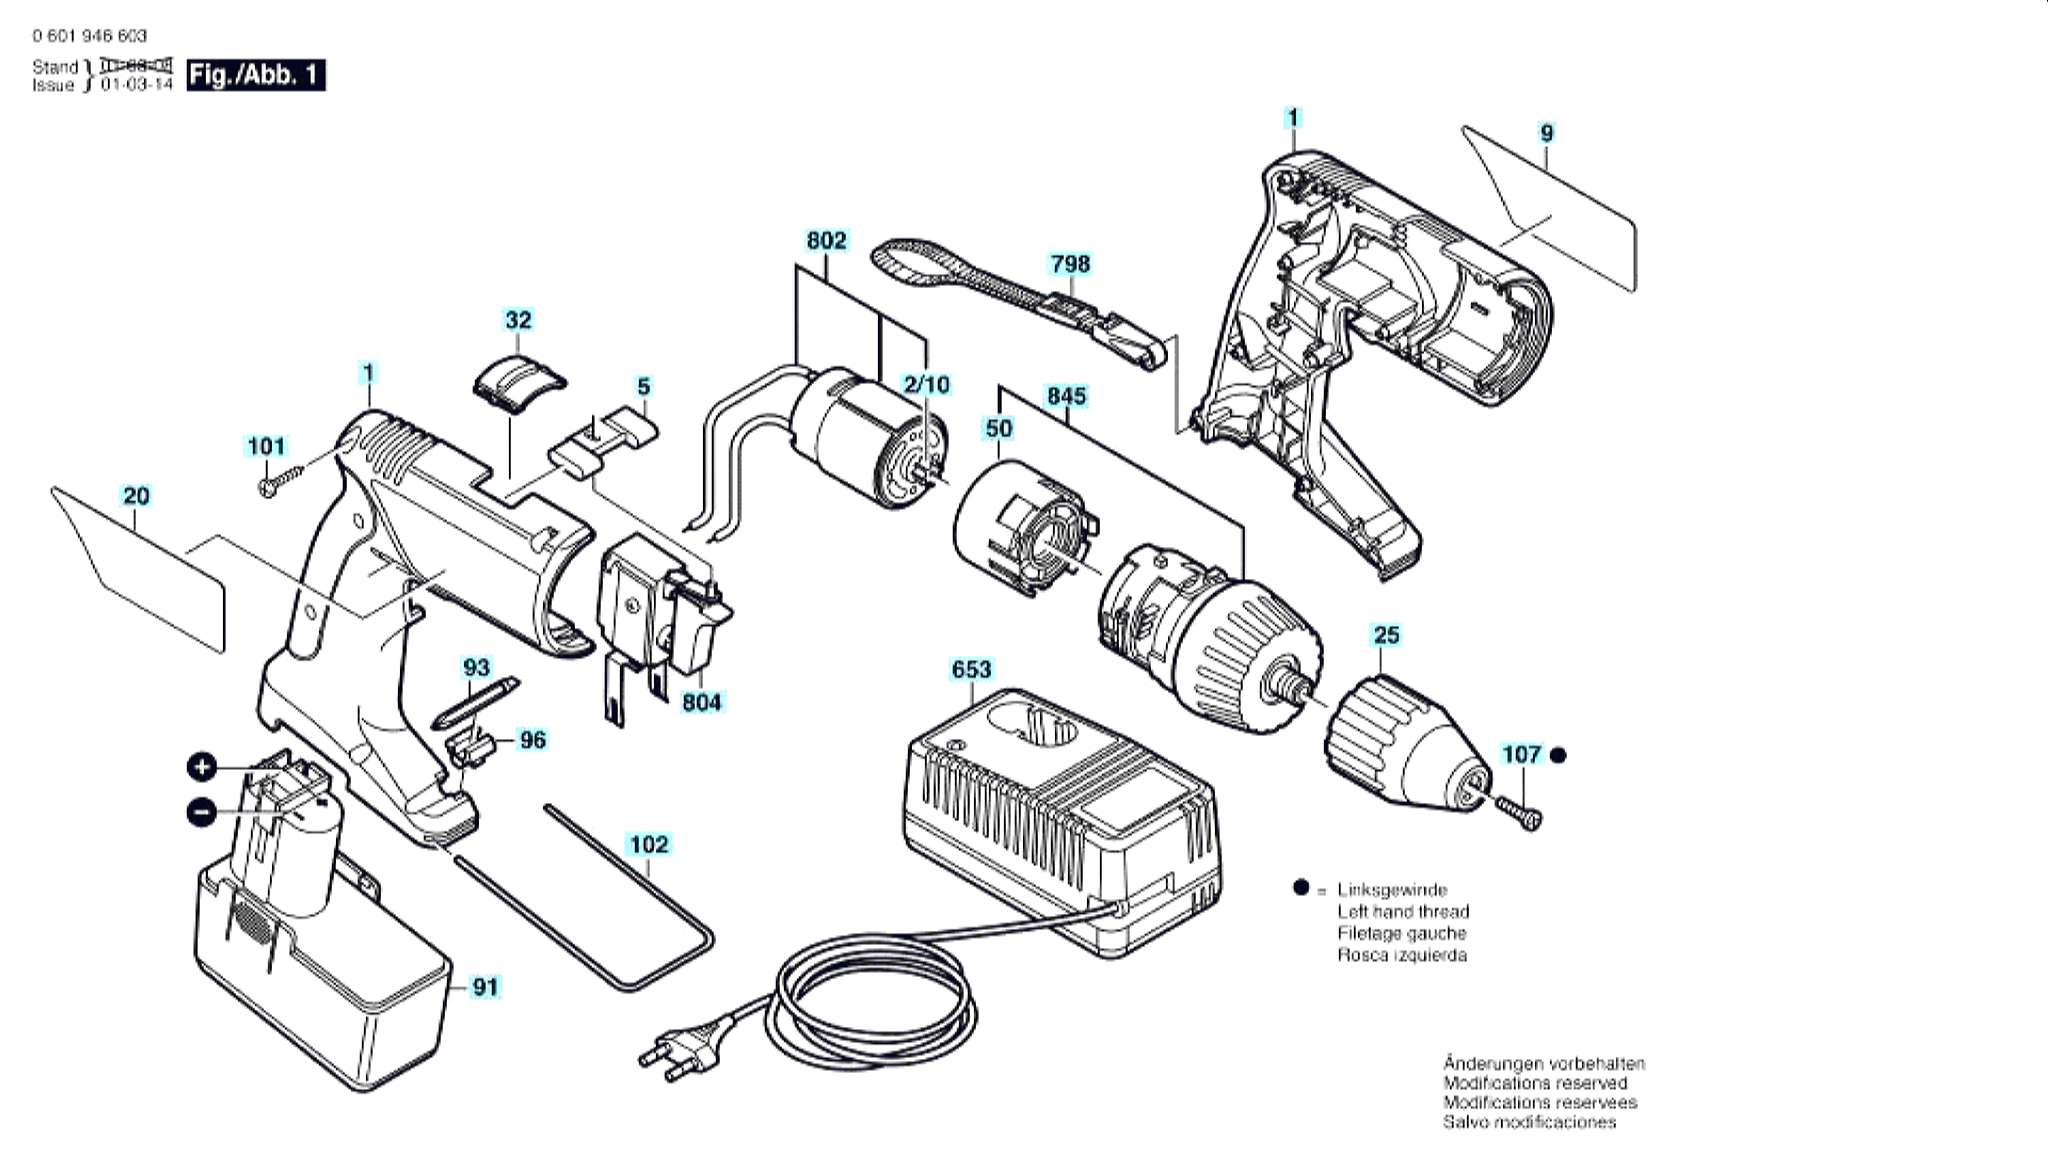 Запчасти, схема и деталировка Bosch GSR 12 VPE-2 (ТИП 06019465AE)